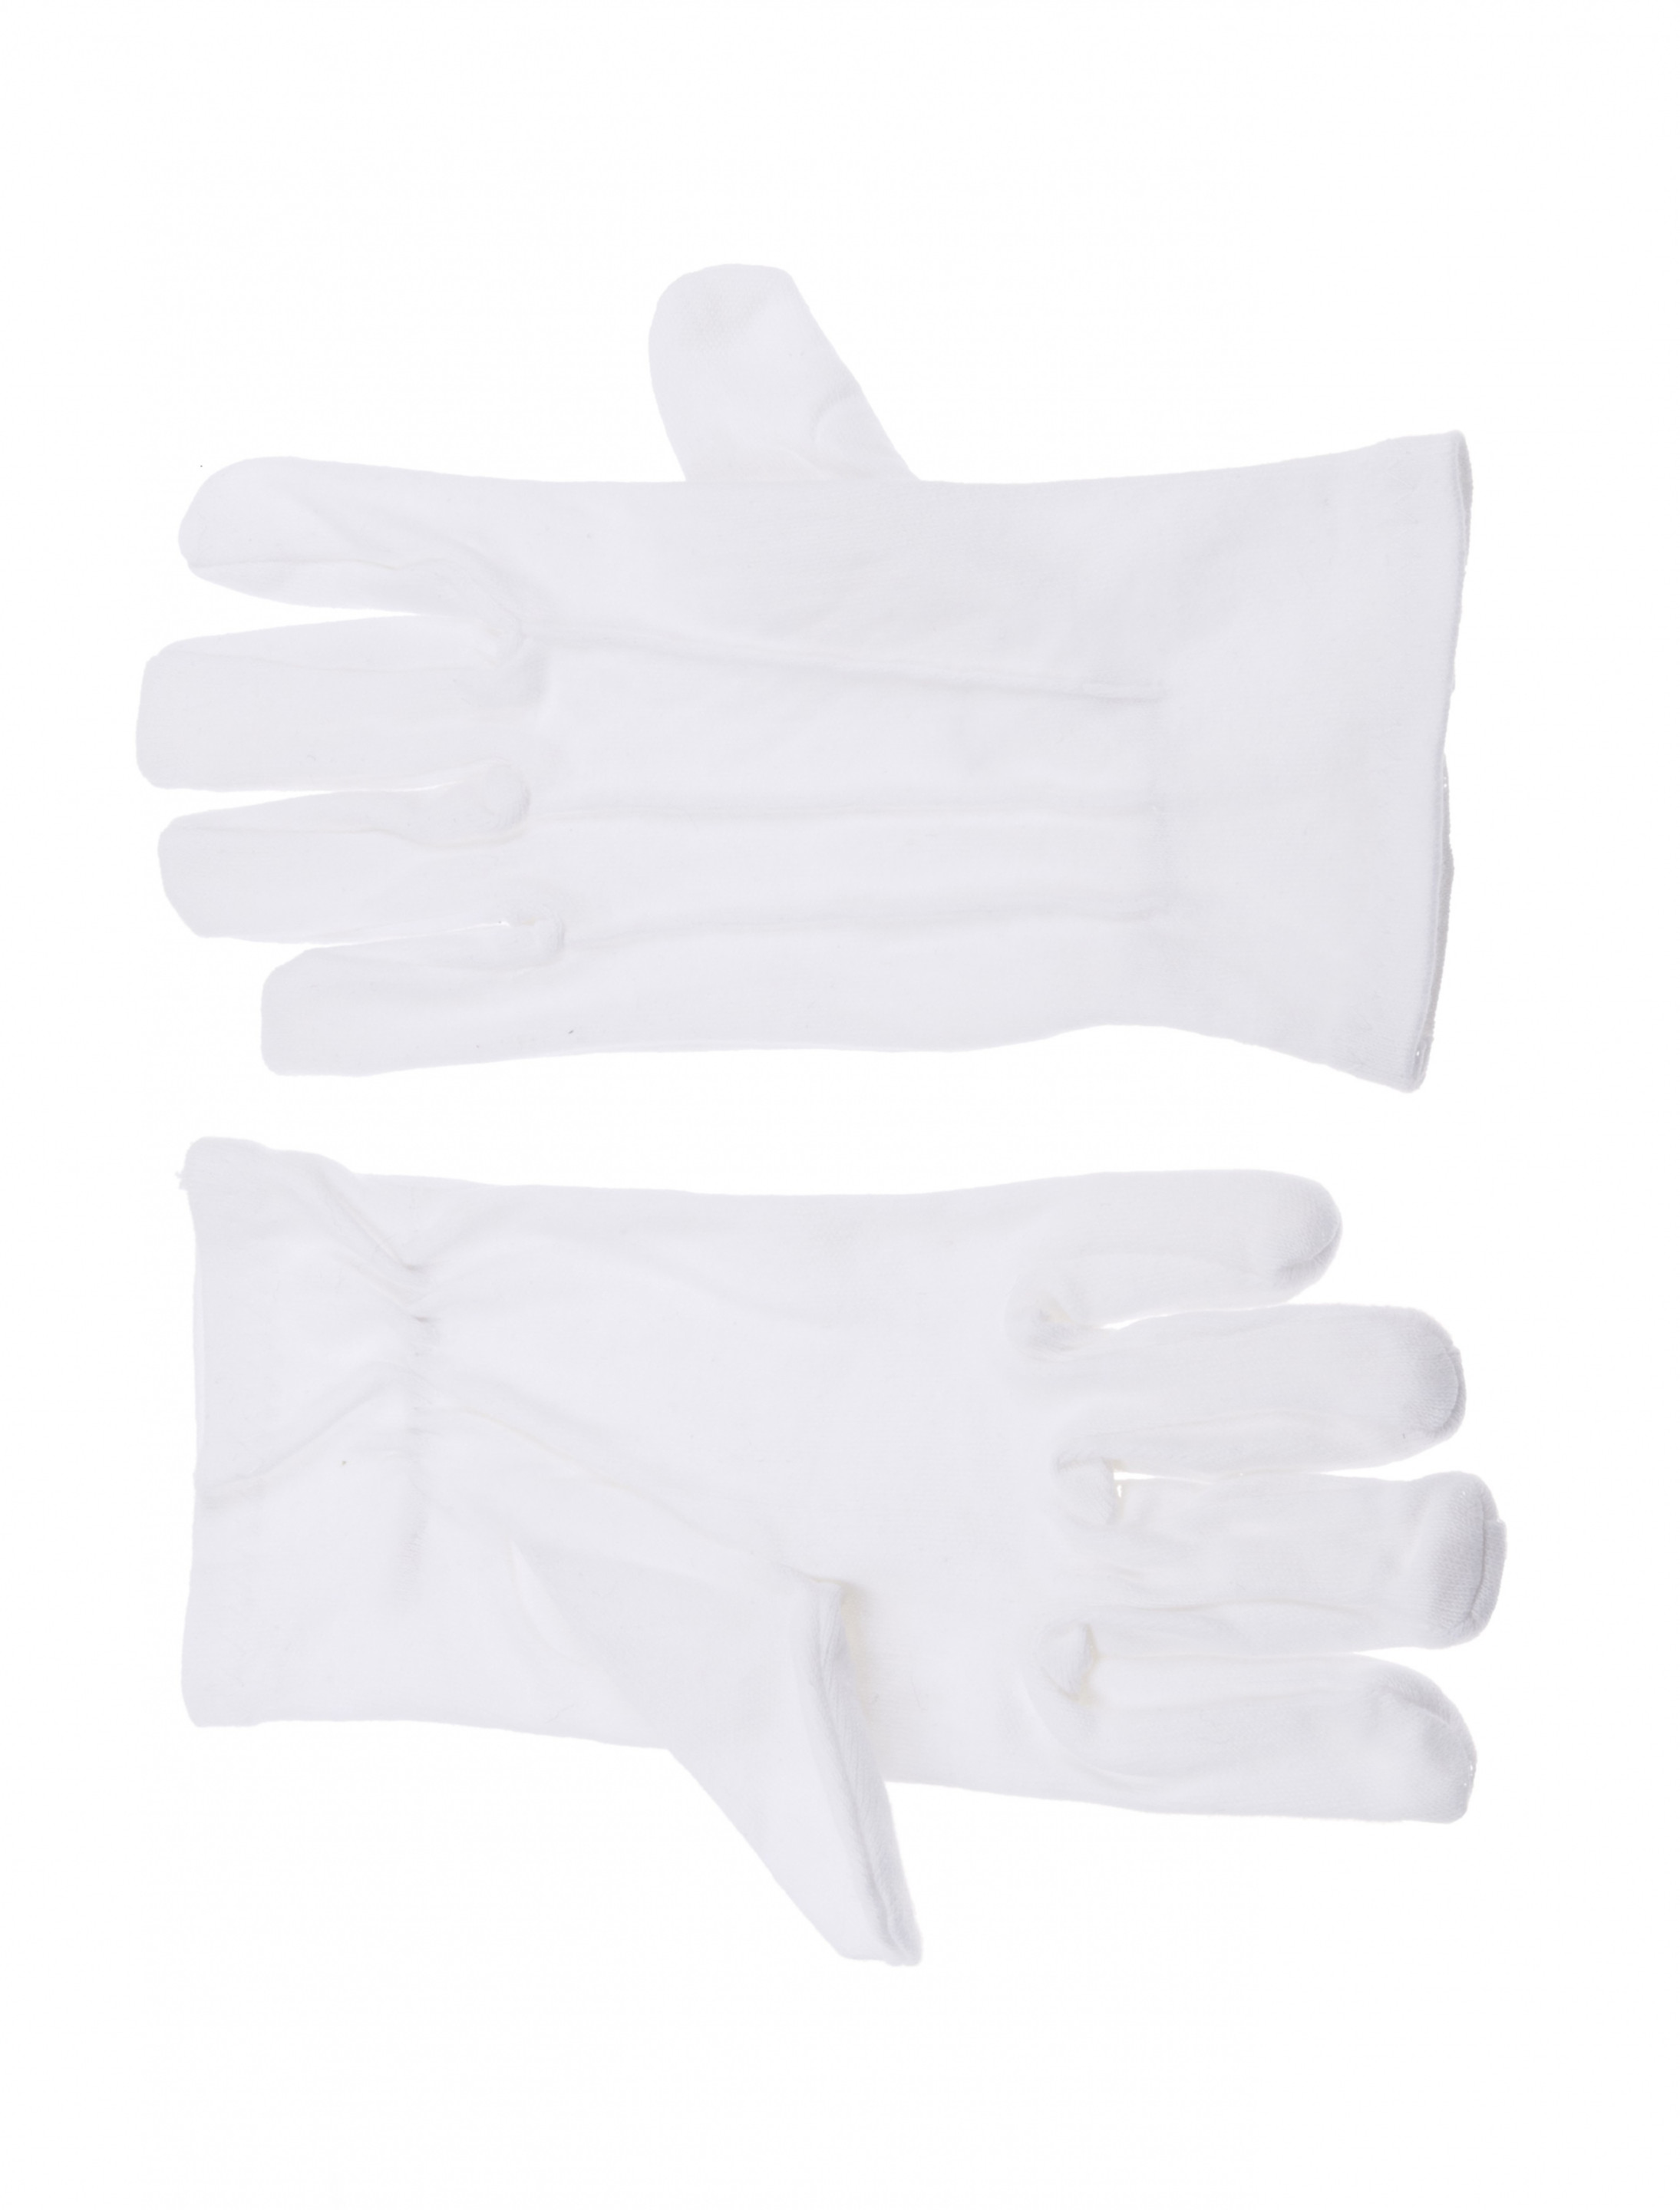 Handschuhe Baumwolle mit Naht weiß XL